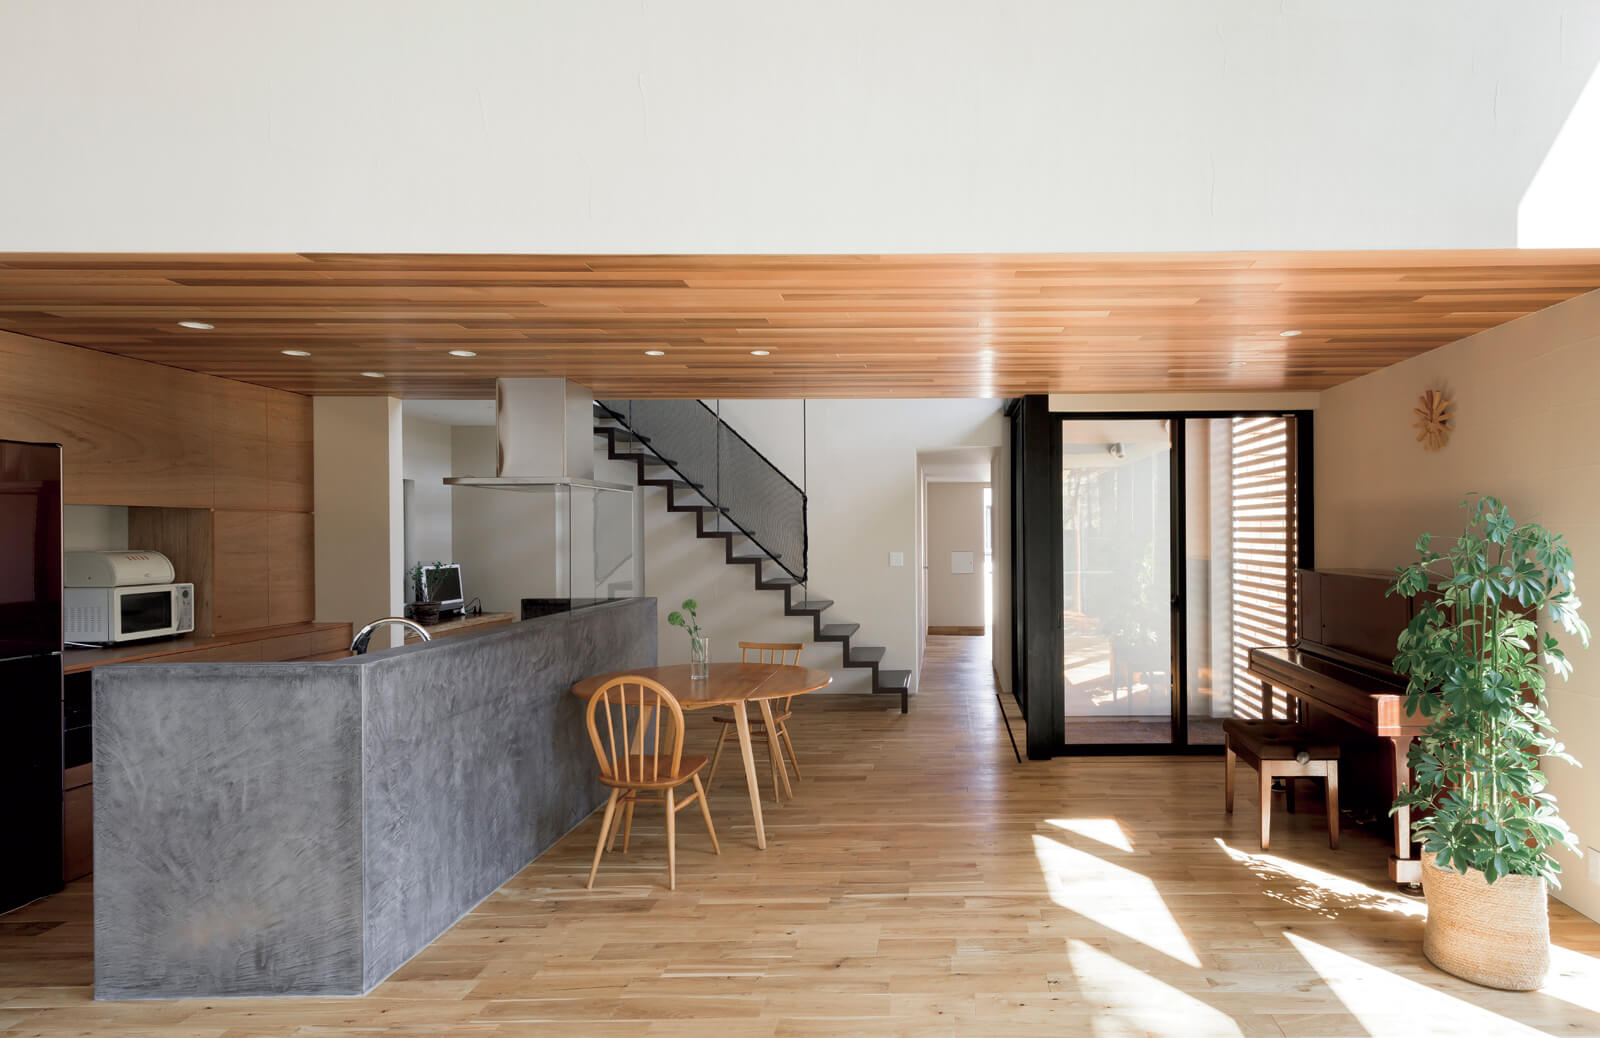 階段のリズミカルなデザインが壁を飾る。アイアンと木、モールテックスの素材感が絶妙なバランス